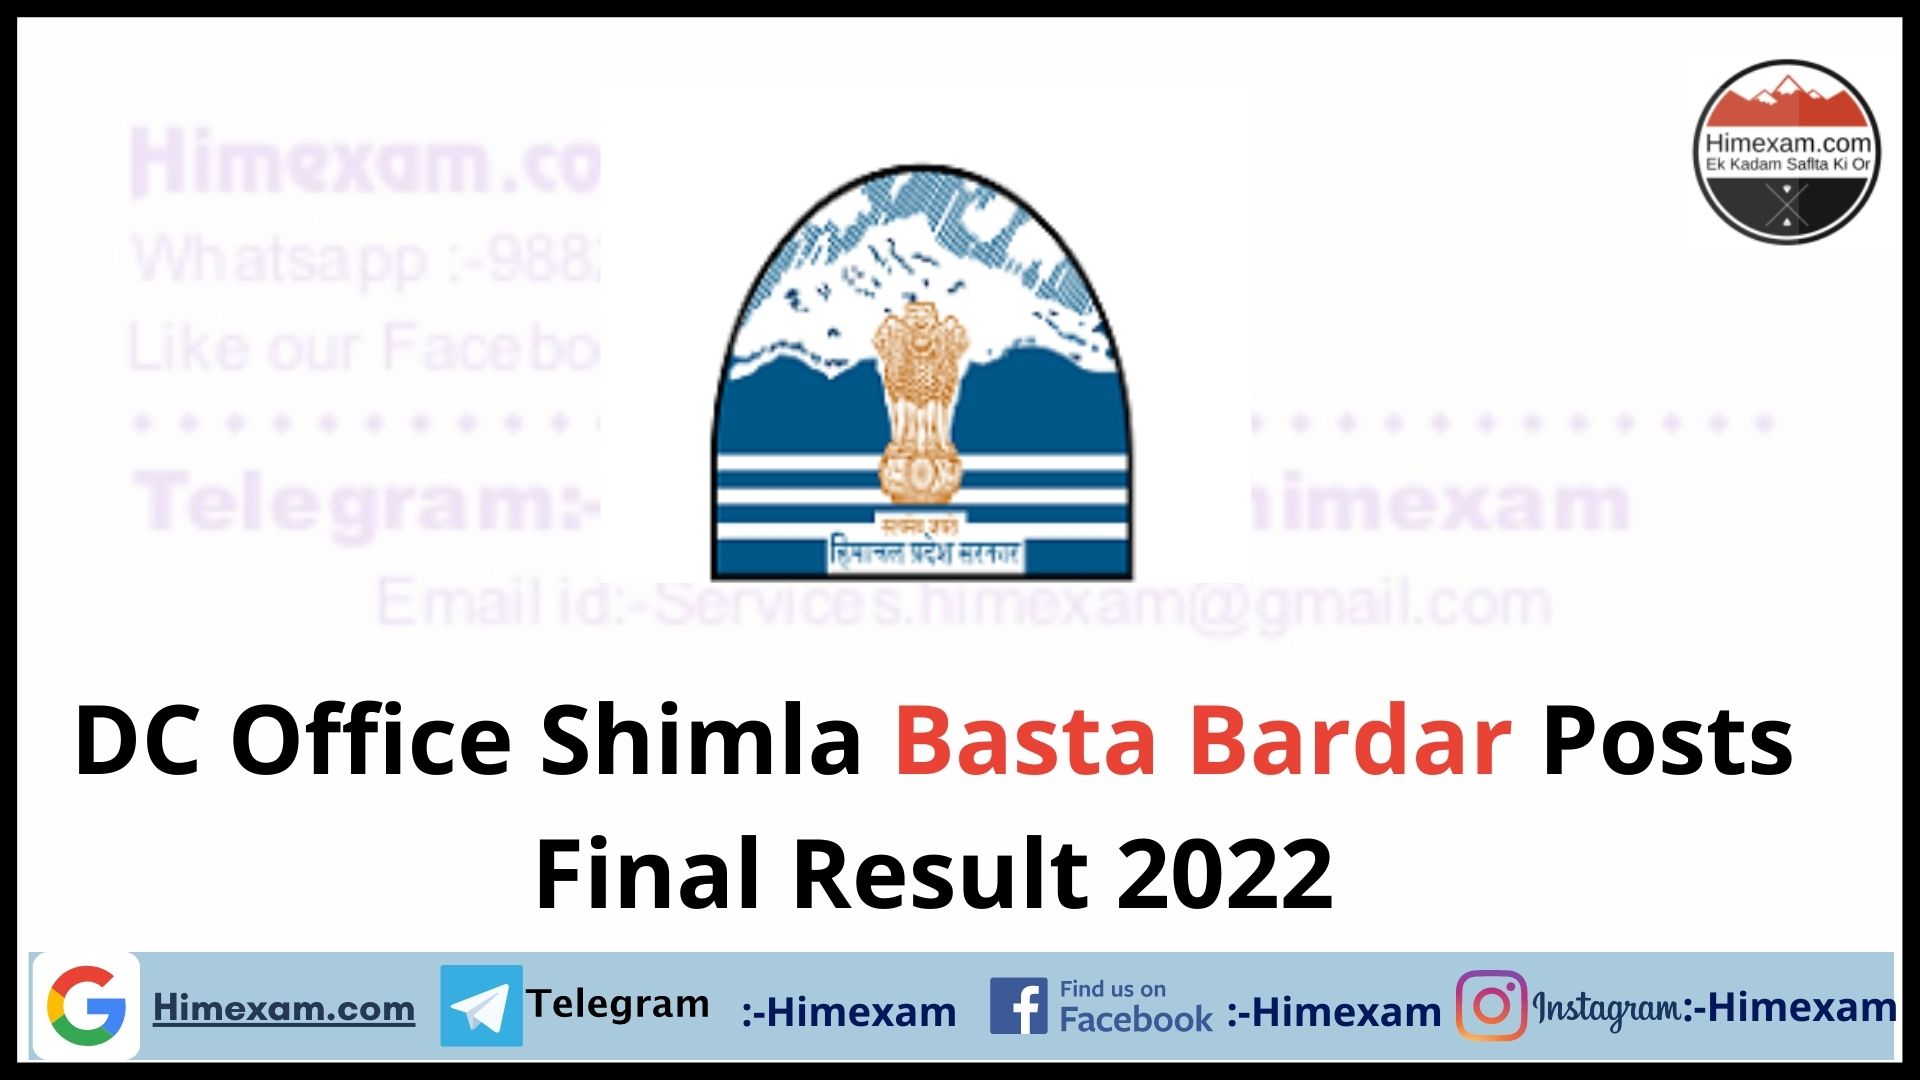 DC Office Shimla Basta Bardar Posts Final Result 2022